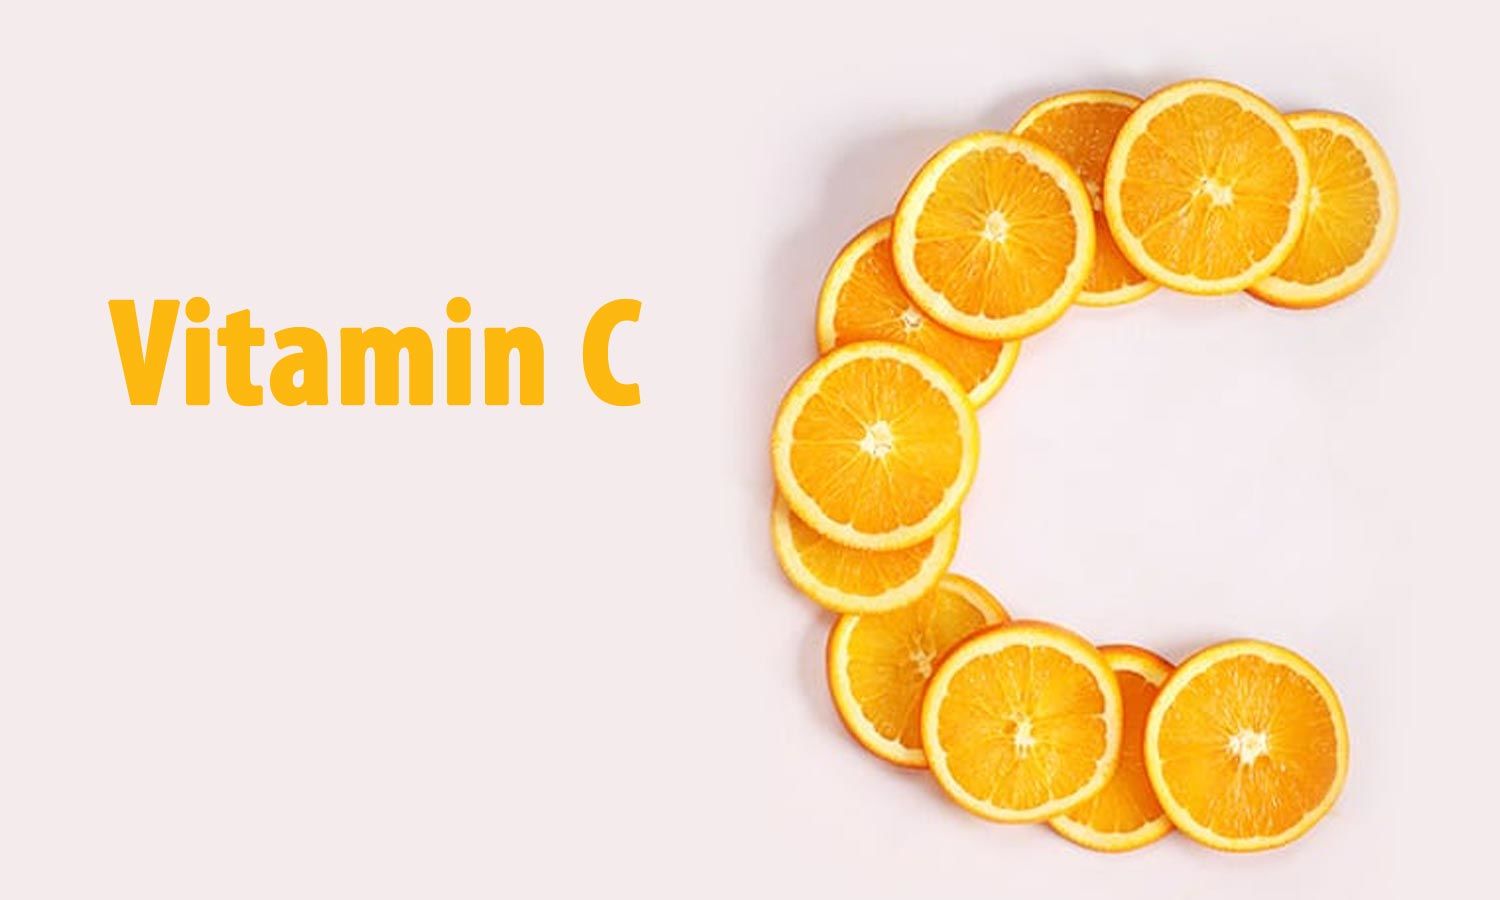 uống vitamin c có giảm cân không, uống vitamin c giảm cân, giảm cân bằng vitamin c, cách giảm cân bằng vitamin c, vitamin c giảm béo, vitamin c có giảm cân được không, vitamin c giúp giảm cân